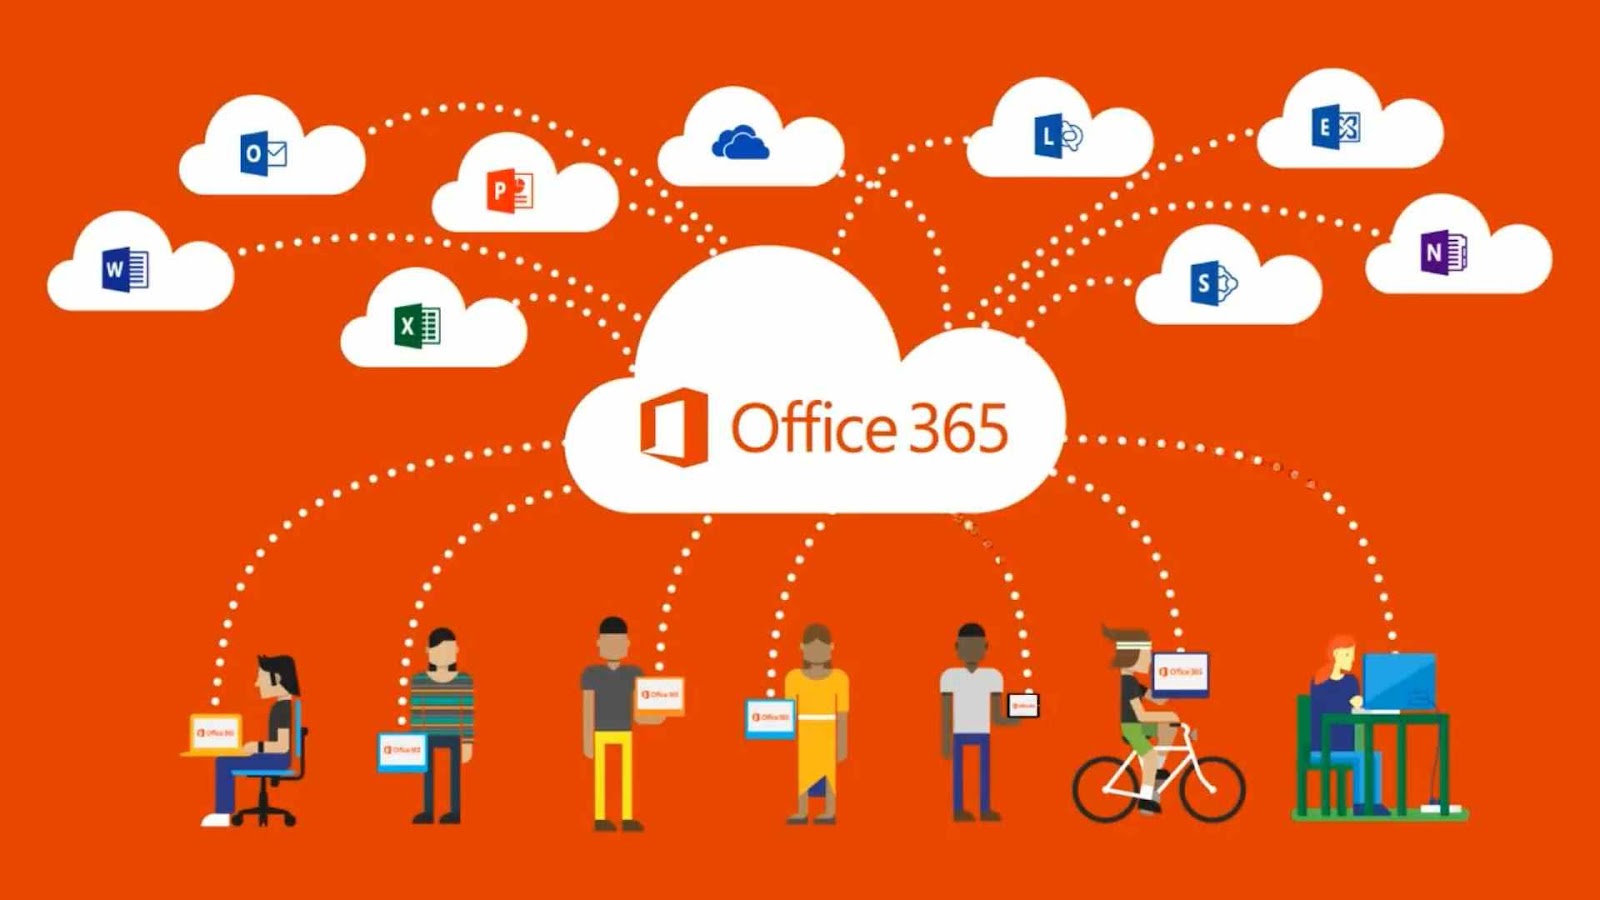 Microsoft Office 365: Fitur, Kelebihan, & Manfaatnya Bagi Bisnis - 2022